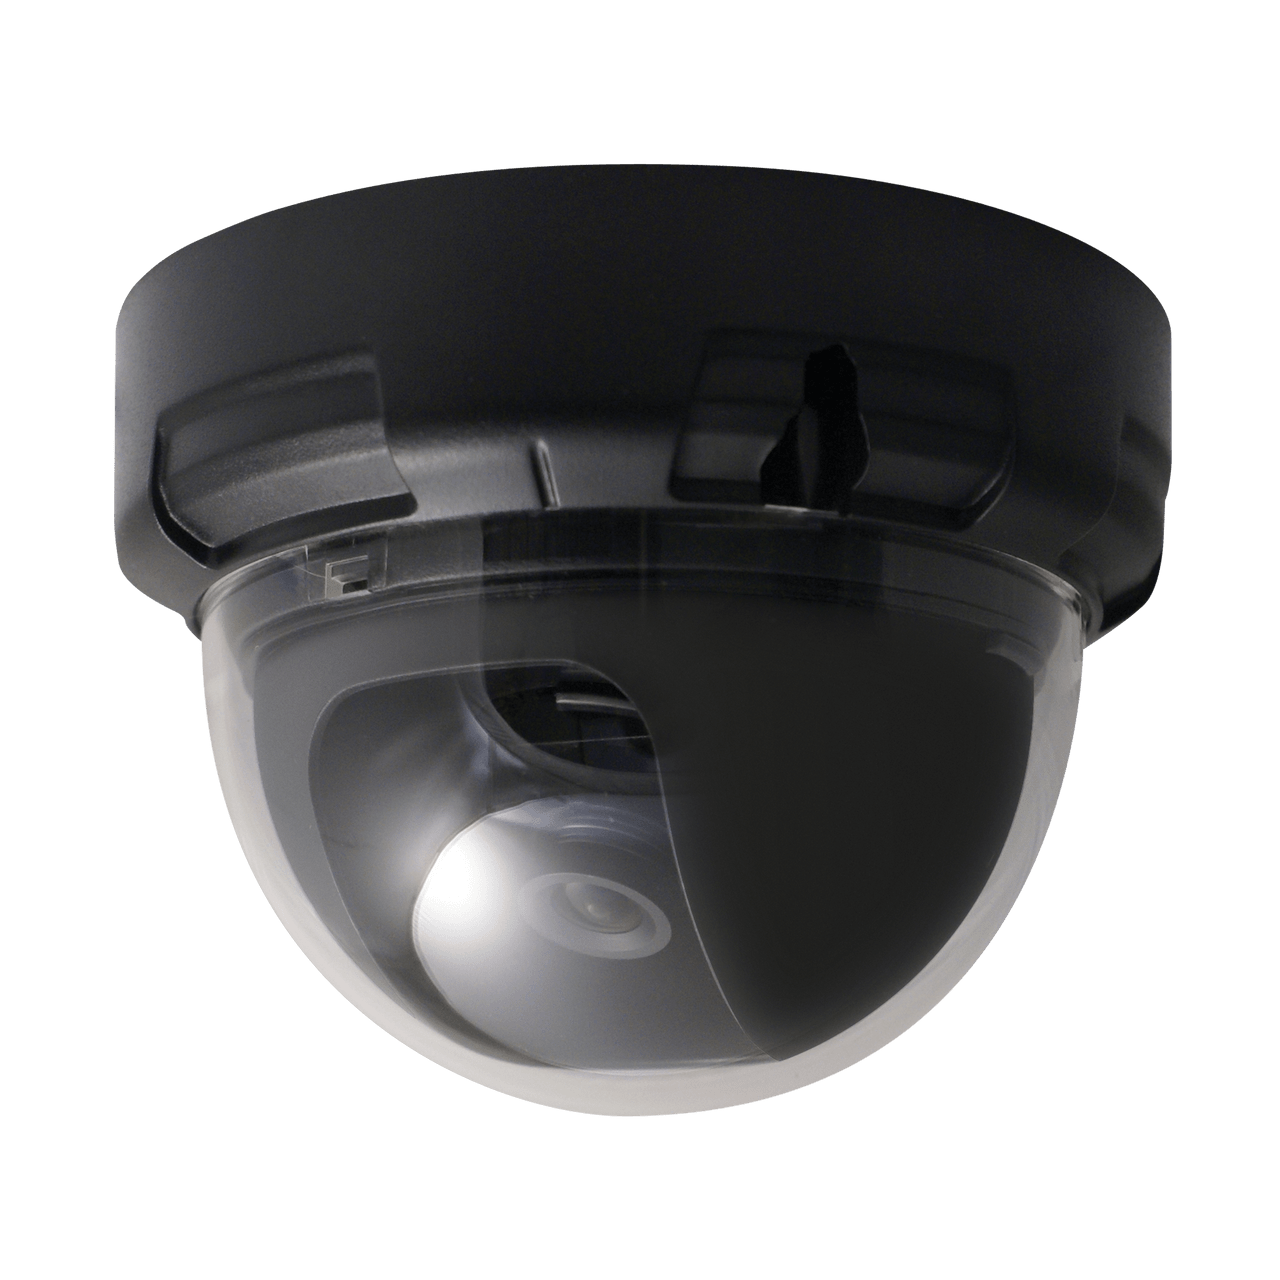 Speco Technologies VL644T 2MP HD-TVI Indoor Dome, 3.6mm fixed lens, 12VDC, Black Housing (VL644T)